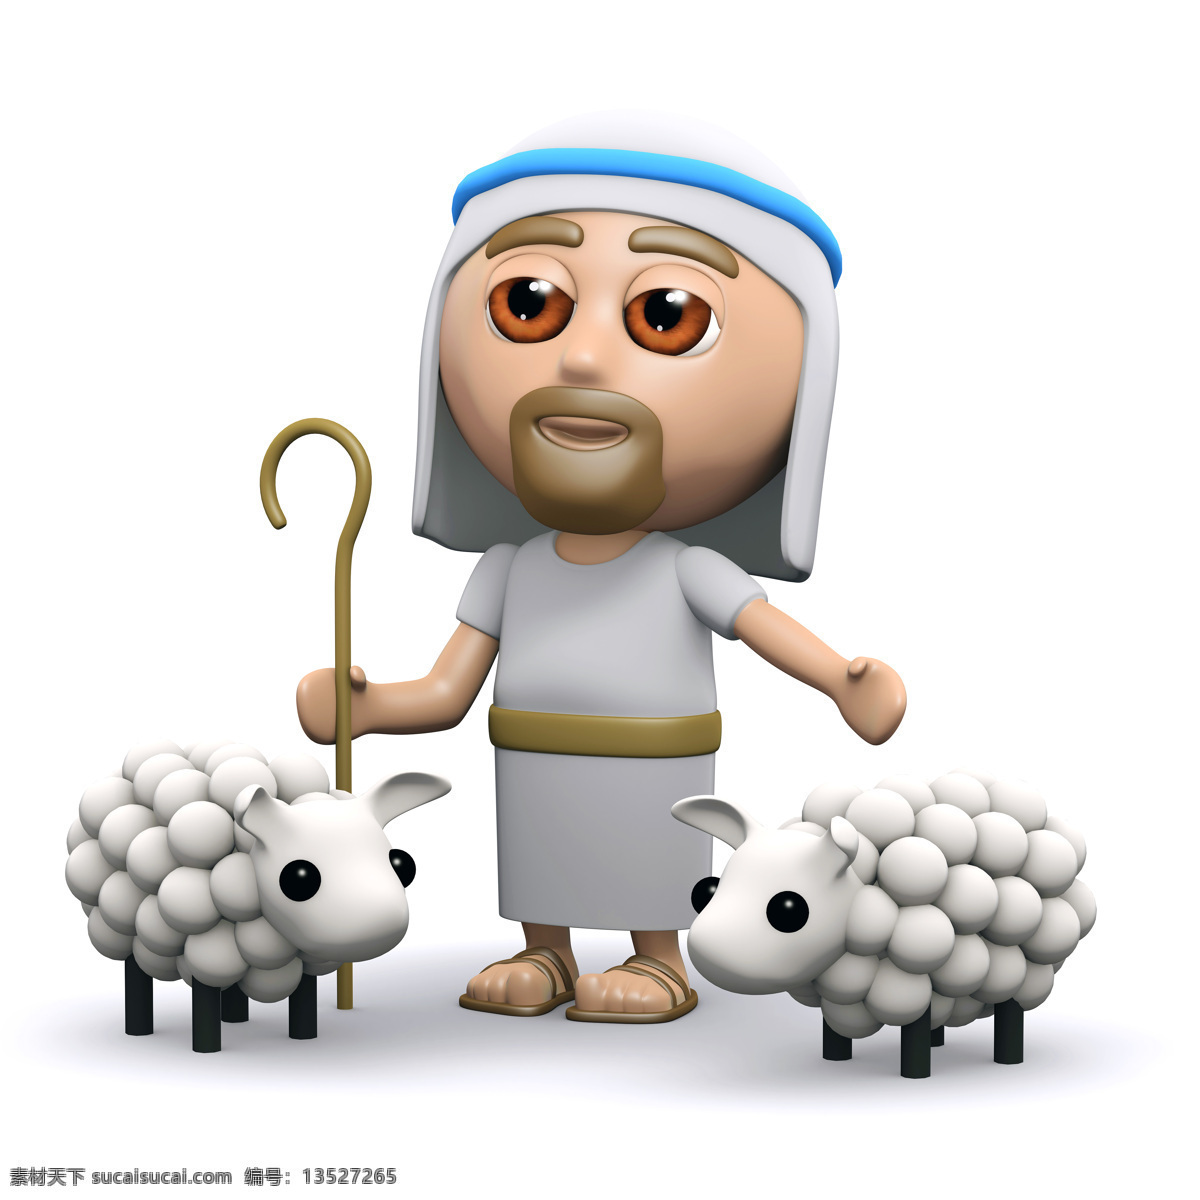 耶稣 绵阳 3d 动漫 3d耶稣主题 动画 动漫人物 卡通人物 羊 其他人物 人物图片